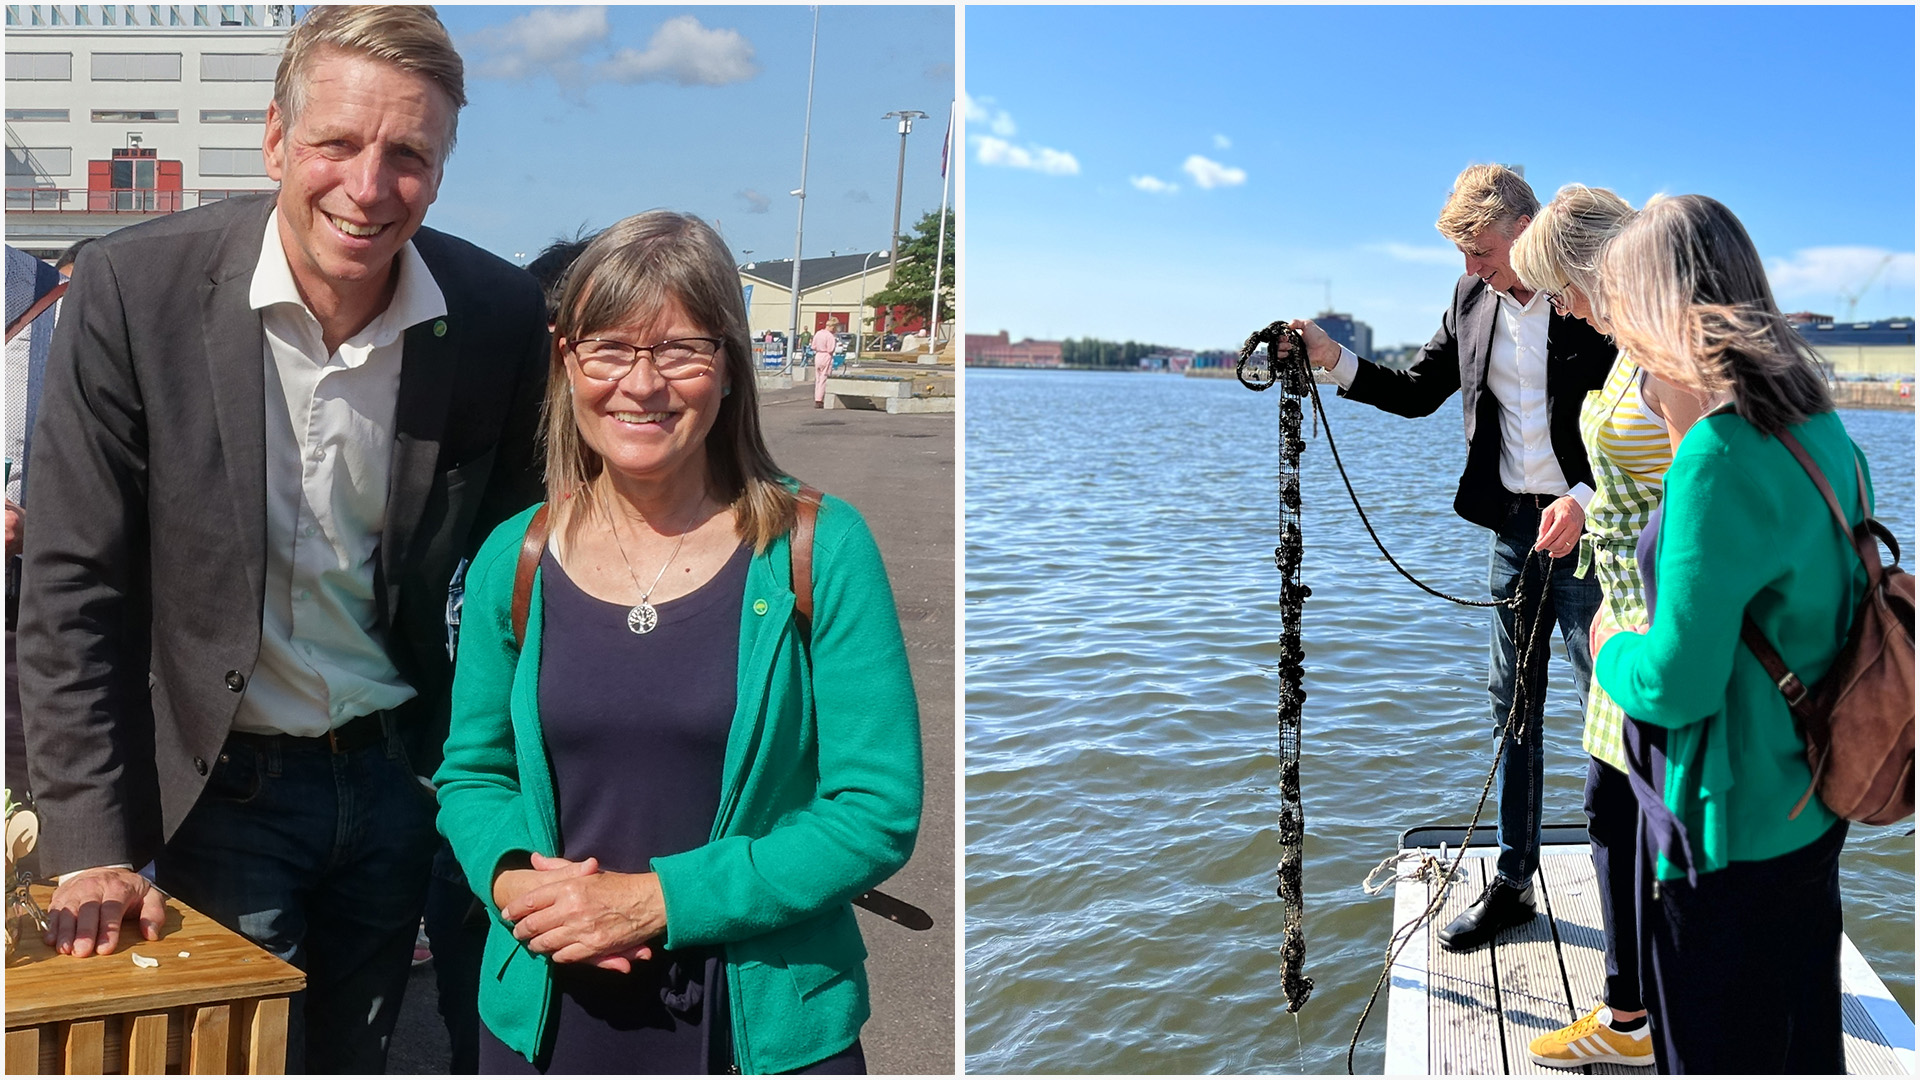 Kollage av två bilder, en porträttbild av Per Bolund och Karin Pleijel och en bild på när de kollar på en del av havsodlingen ute på kolonilotten.